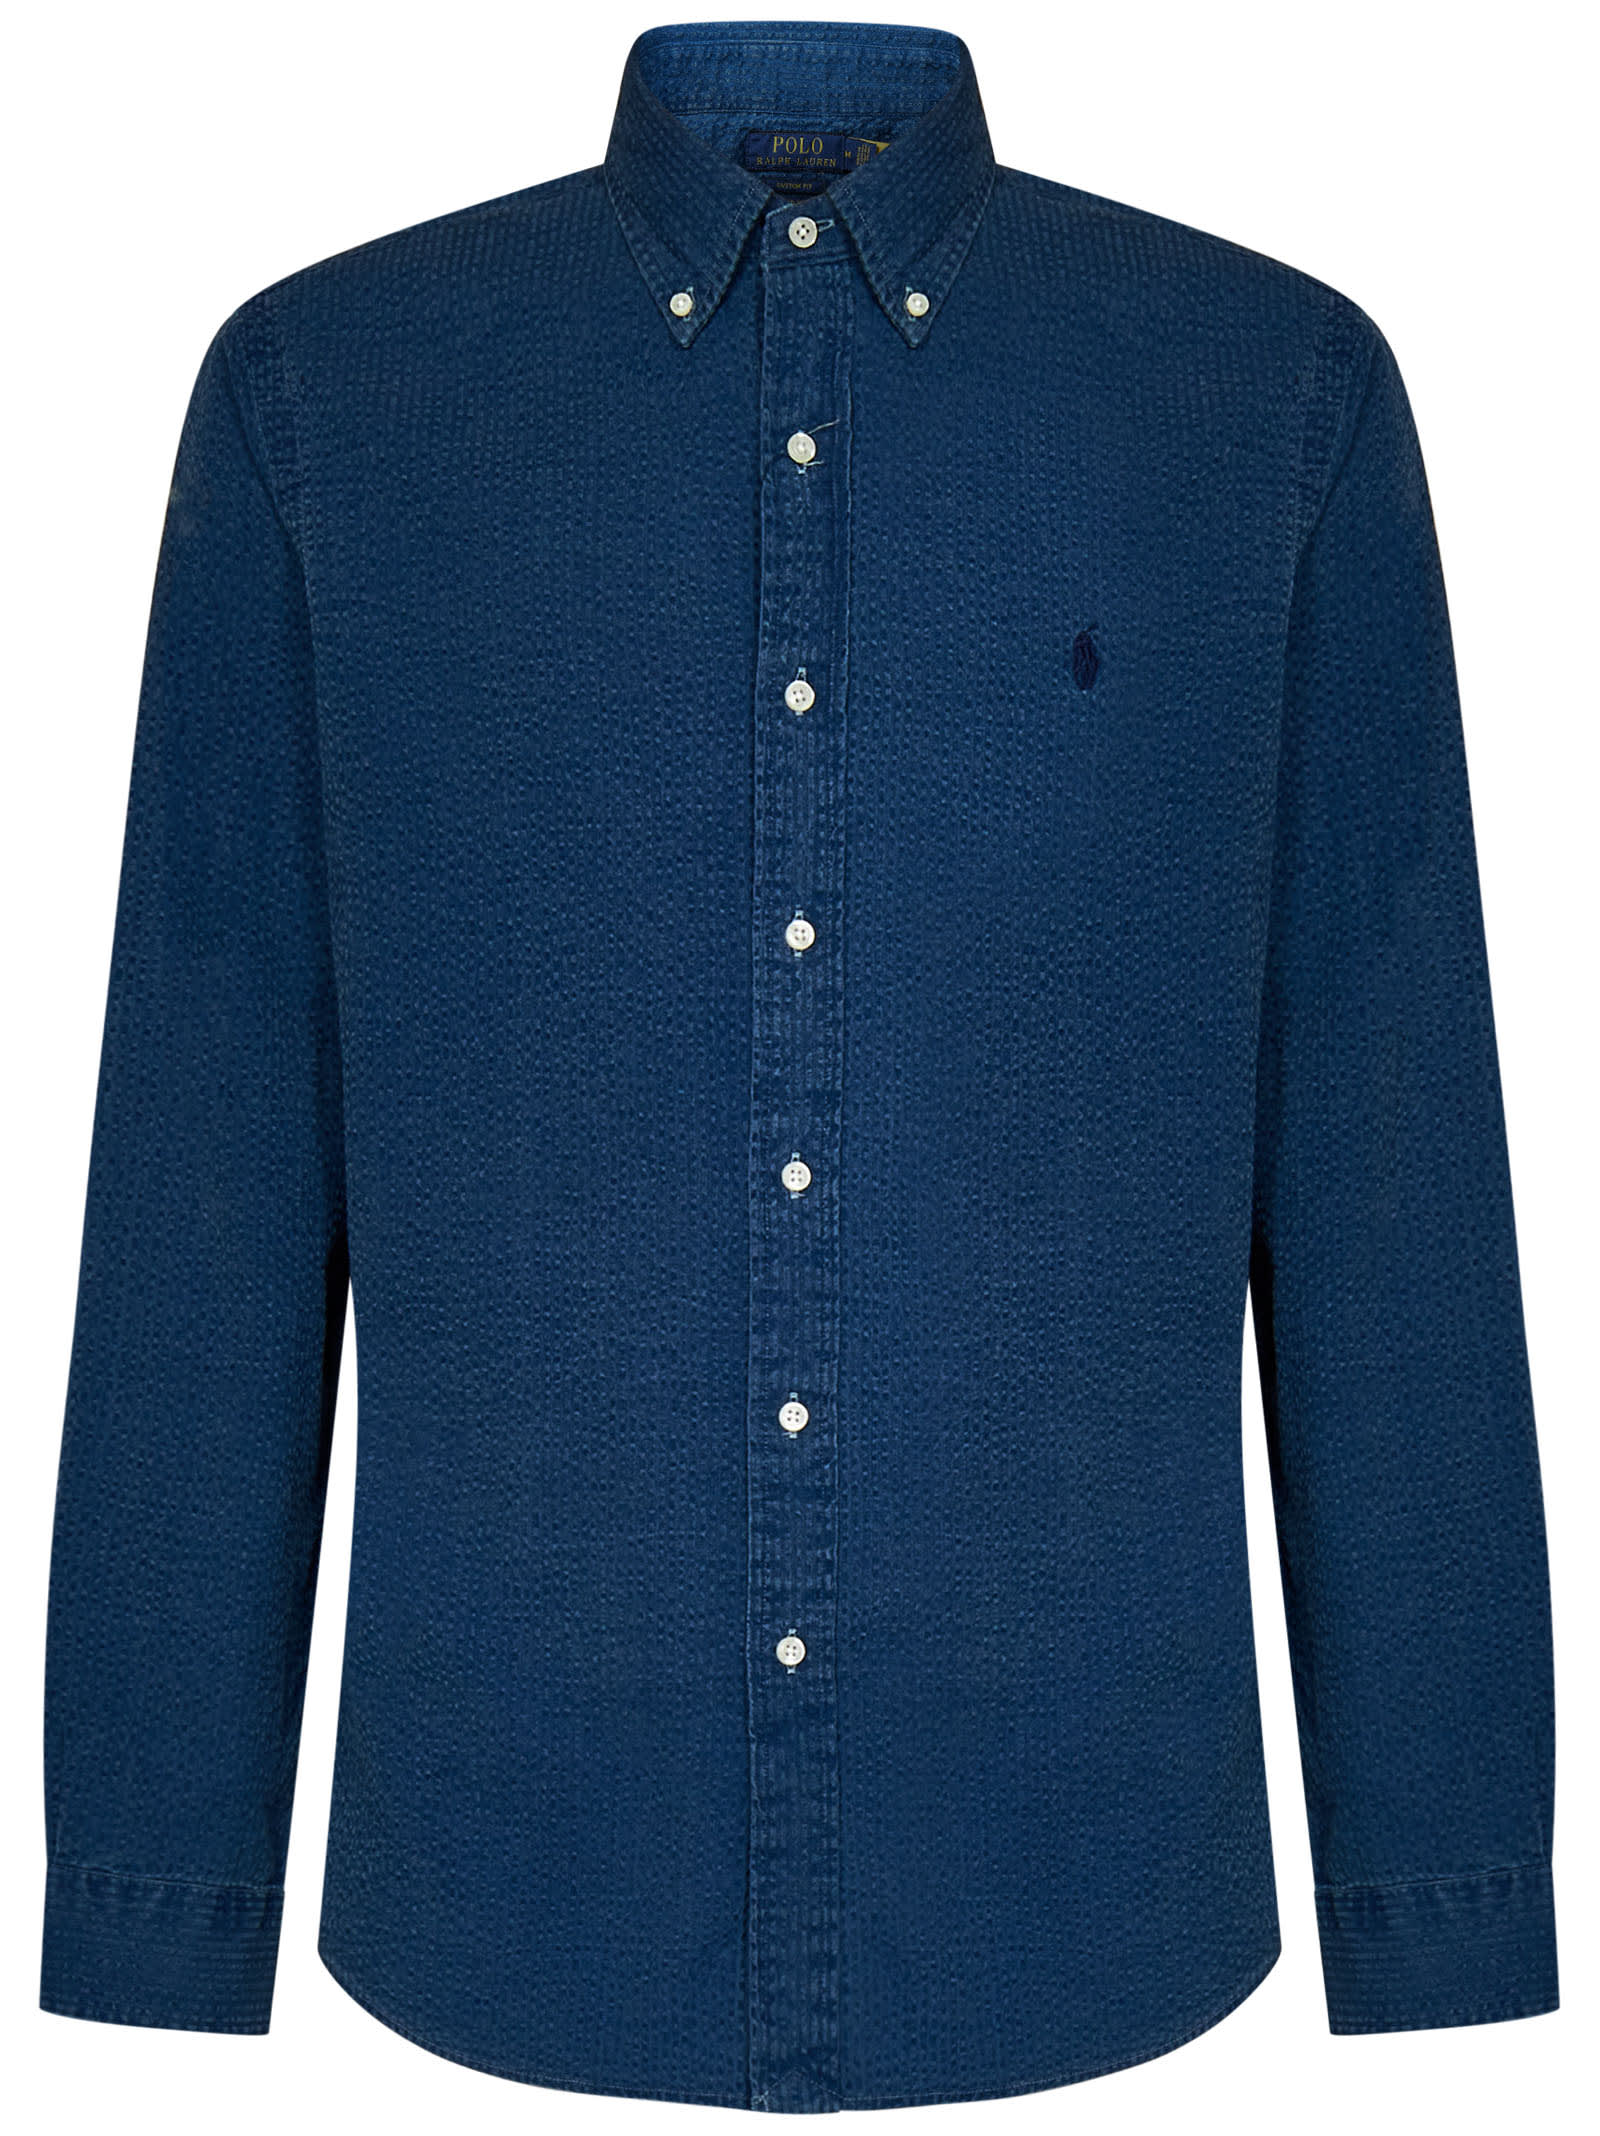 Polo Ralph Lauren Shirt In Blue